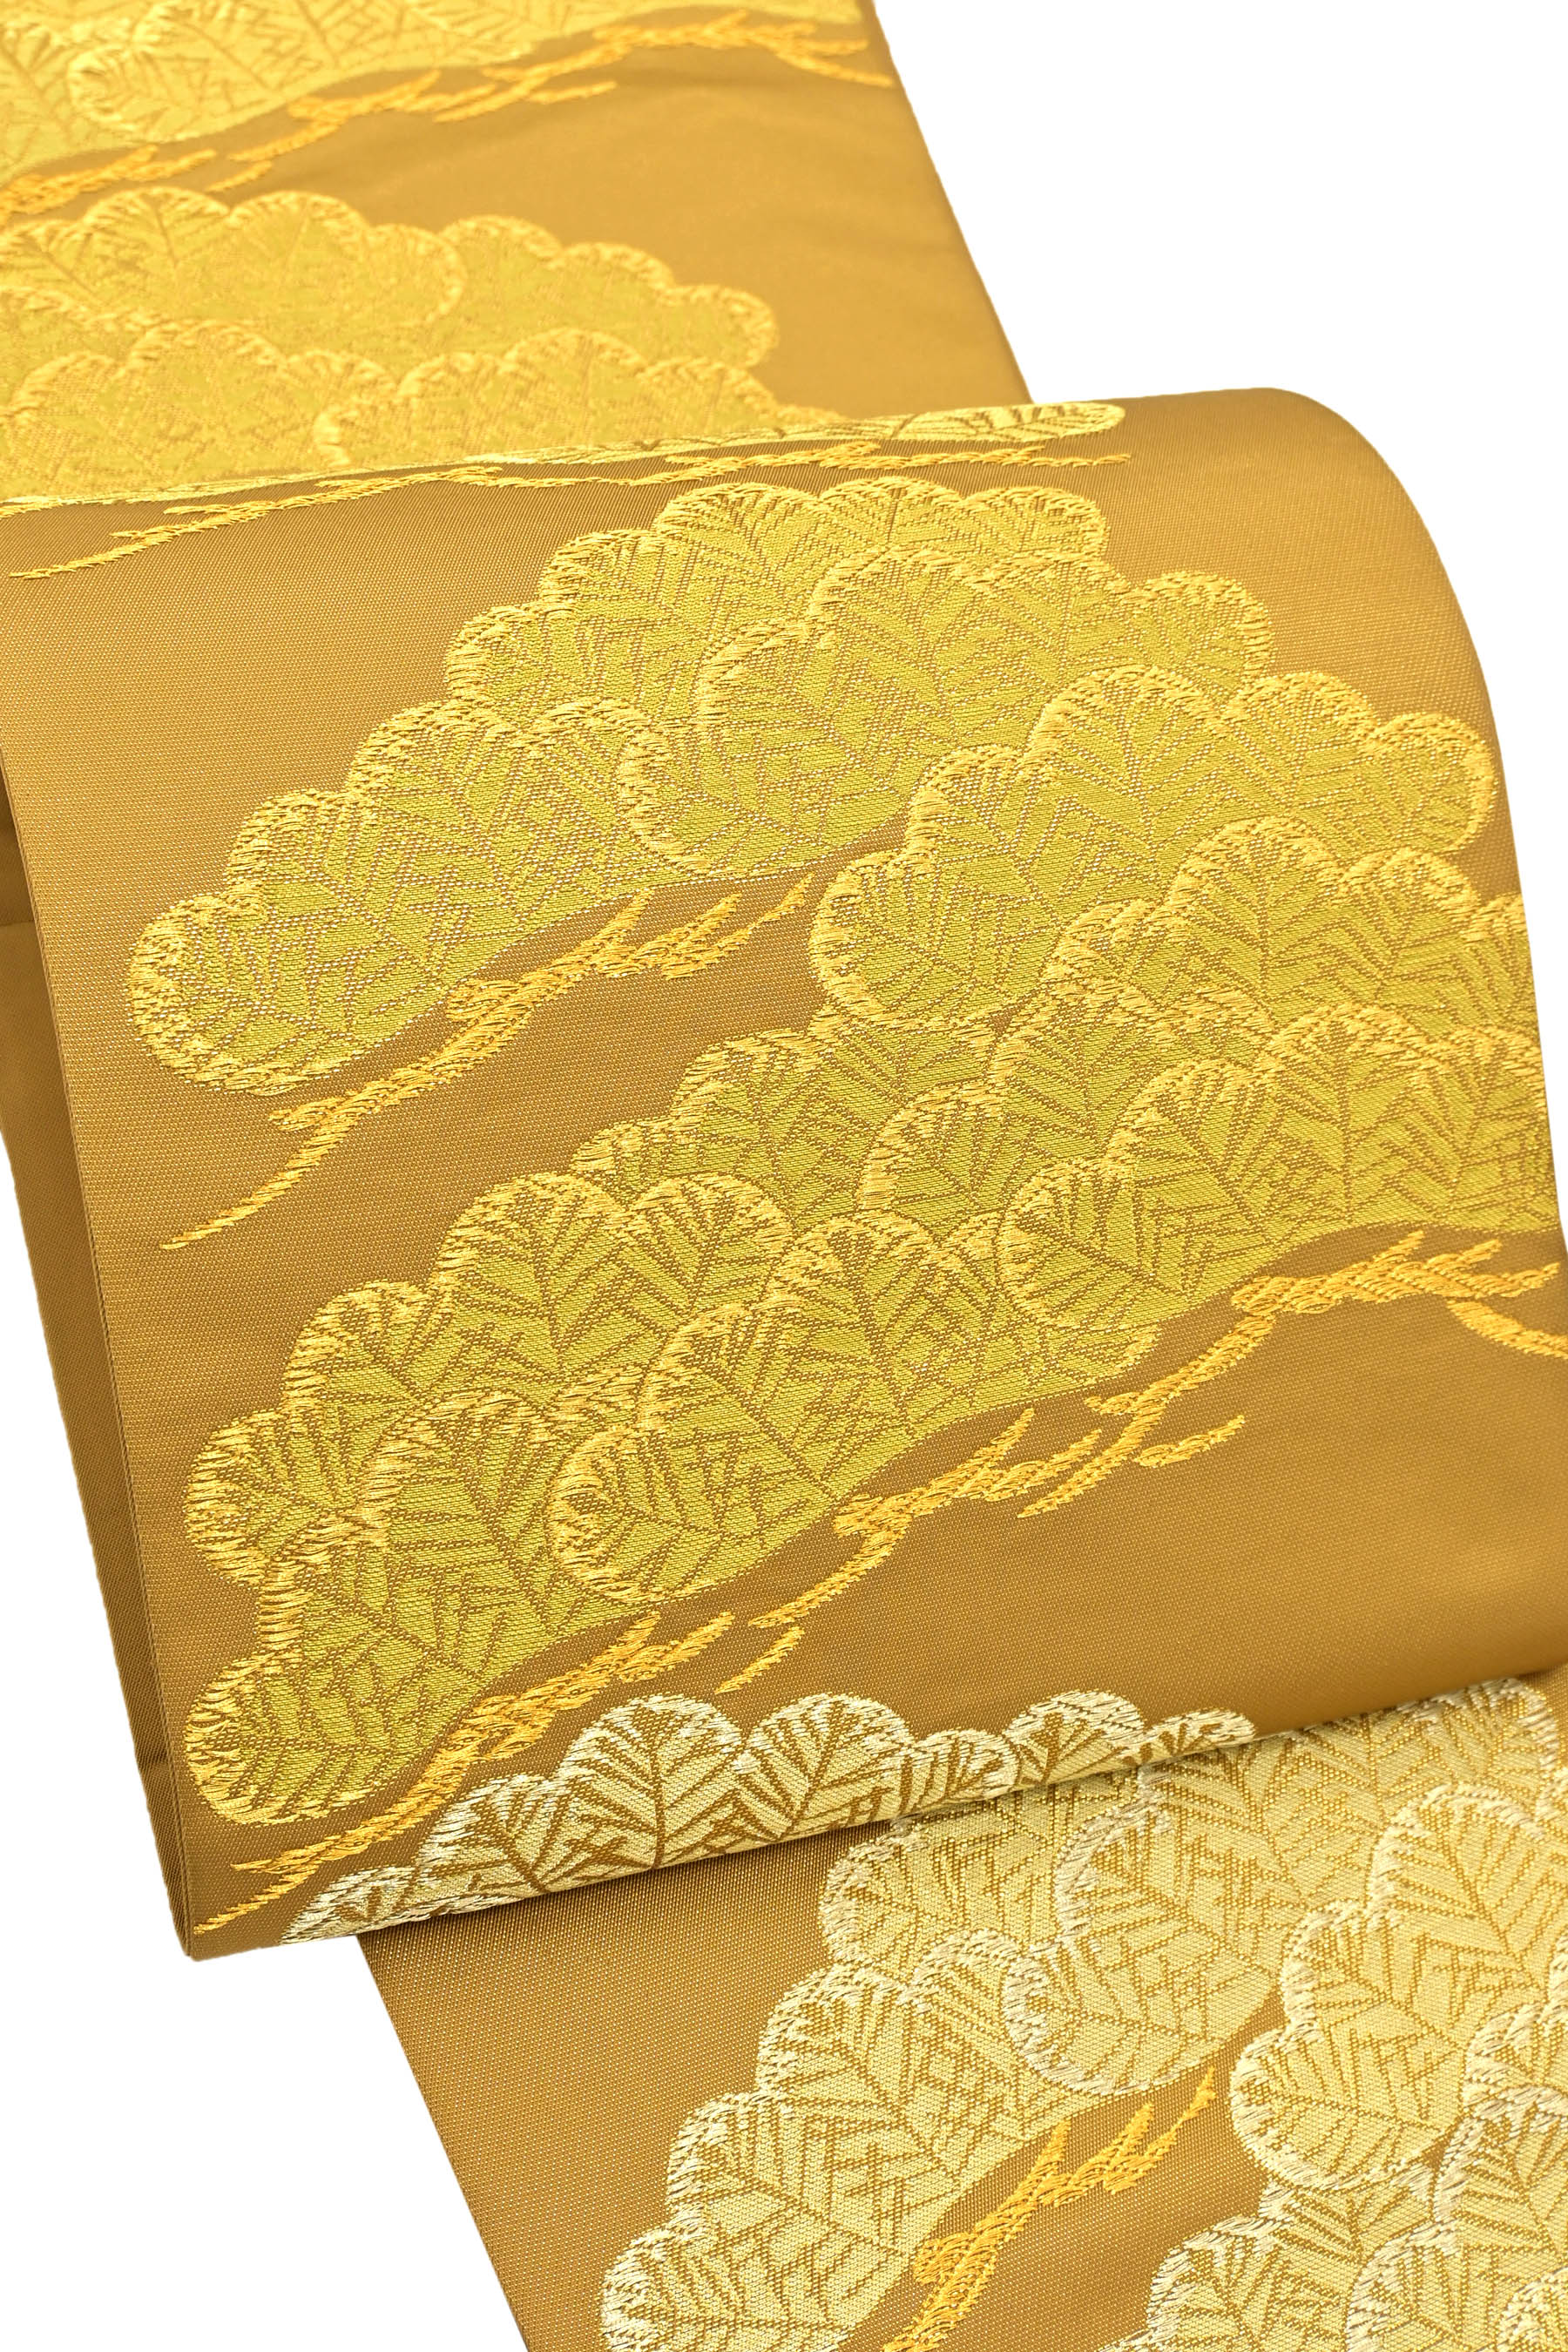 13,038円京都 西陣織 袋帯 正絹 朱色 金糸 ゴールド 豪華 松